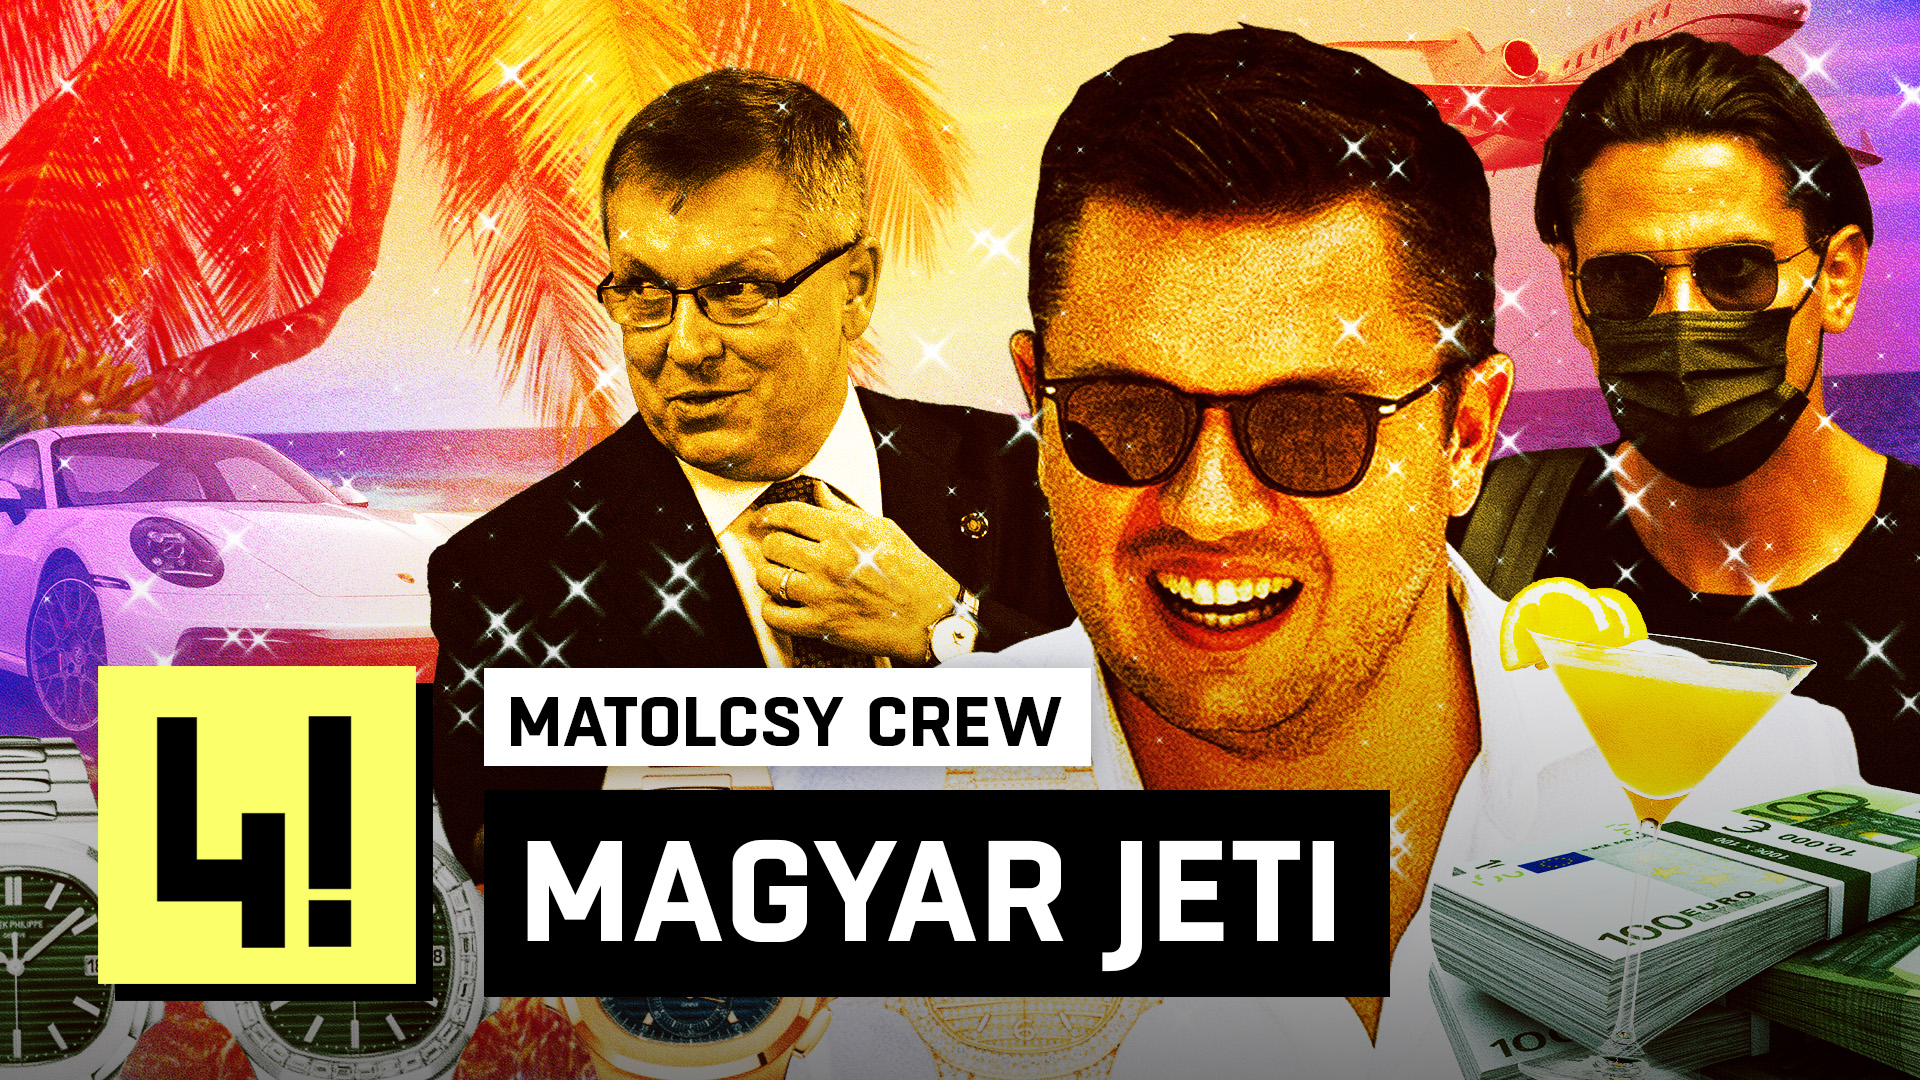 A megvalósult magyar álom: A Matolcsy-crew felemelkedése